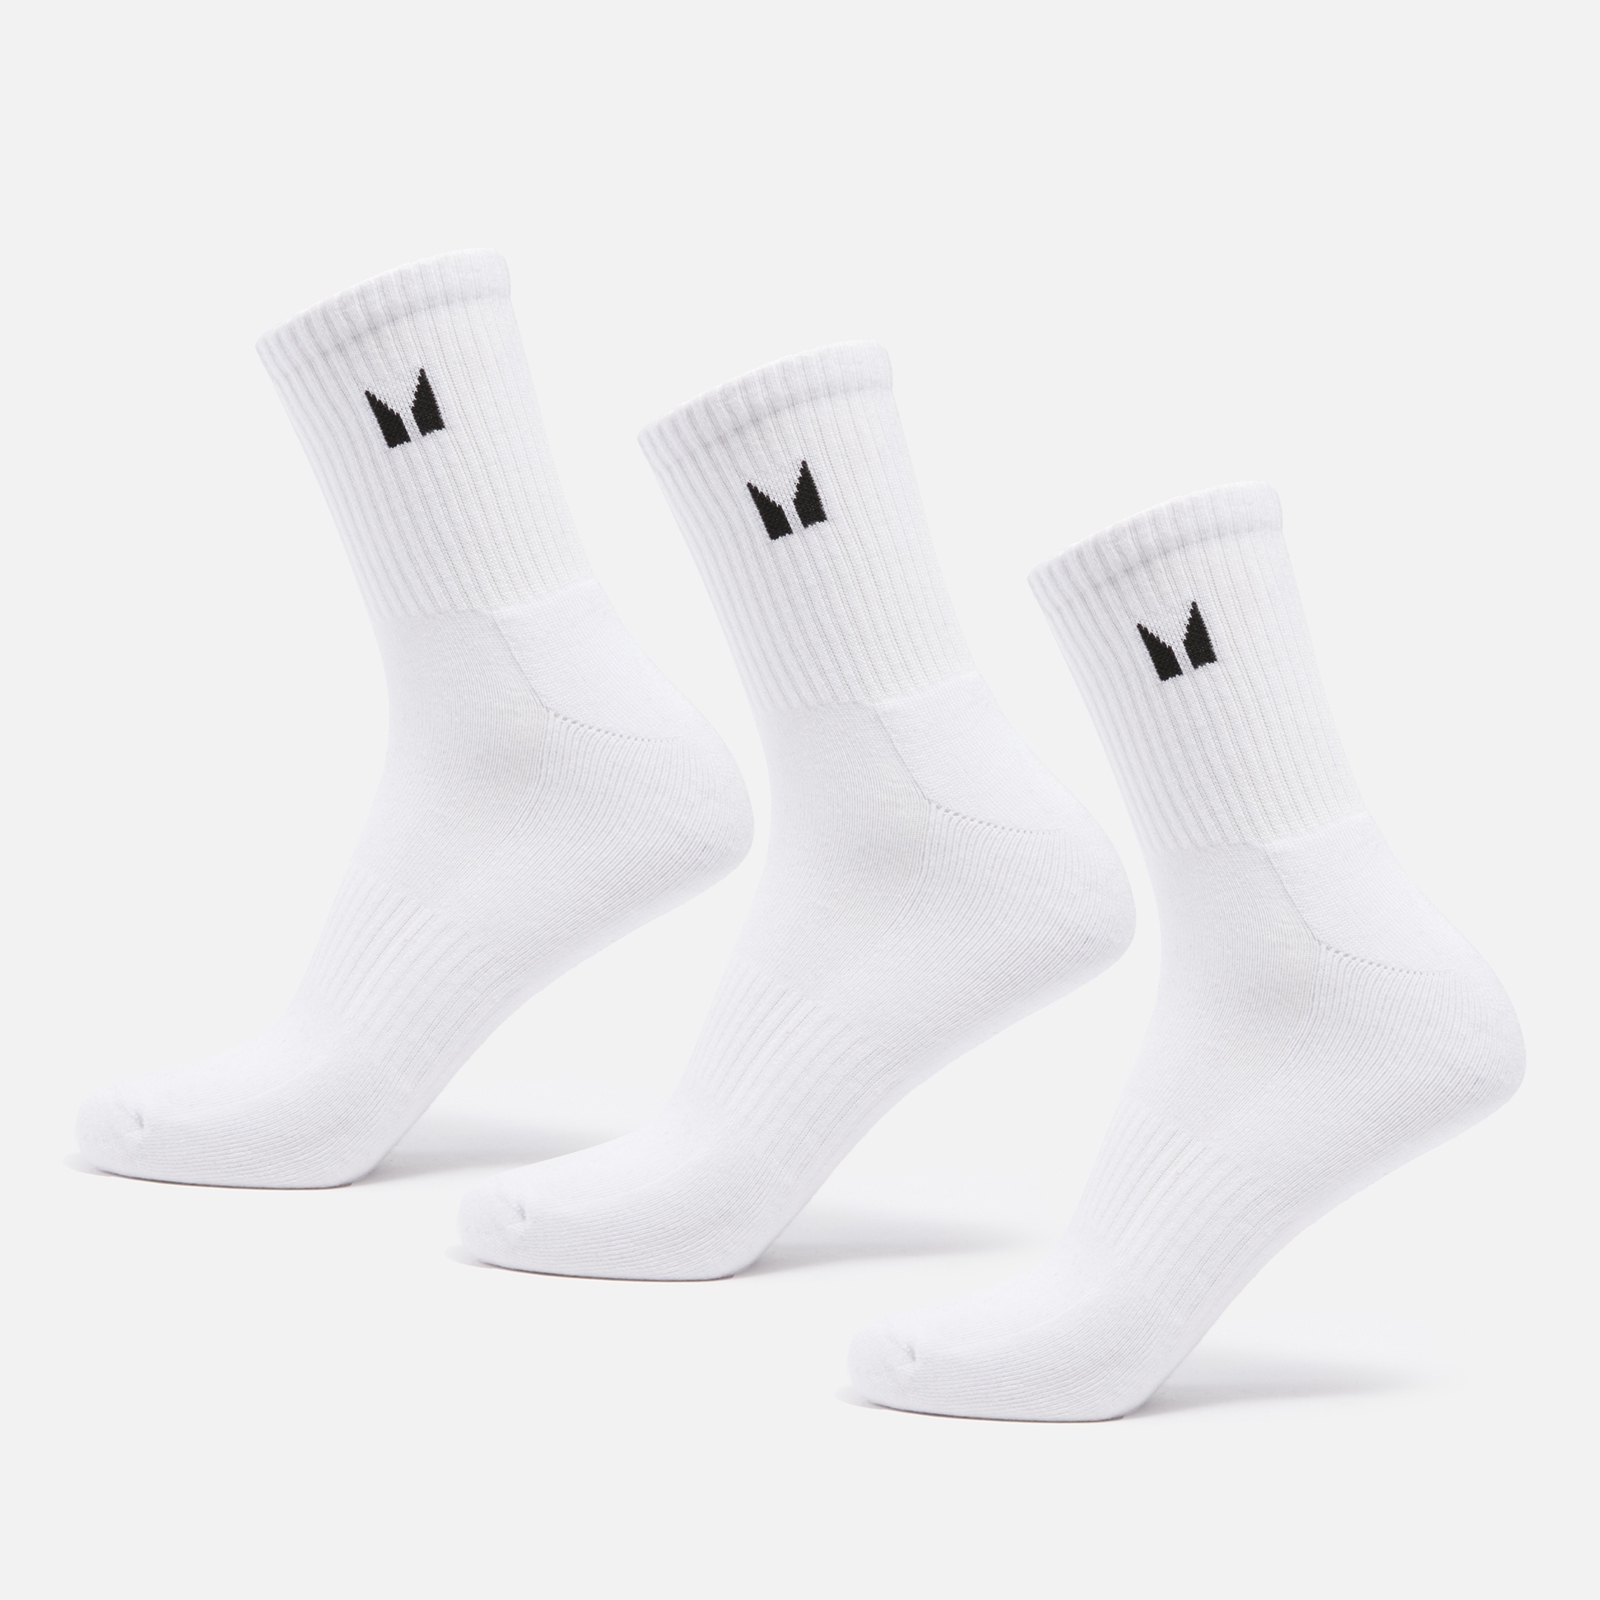 MP Unisex visoke čarape (pakiranje od 3 komada) - bijele - UK 2-5